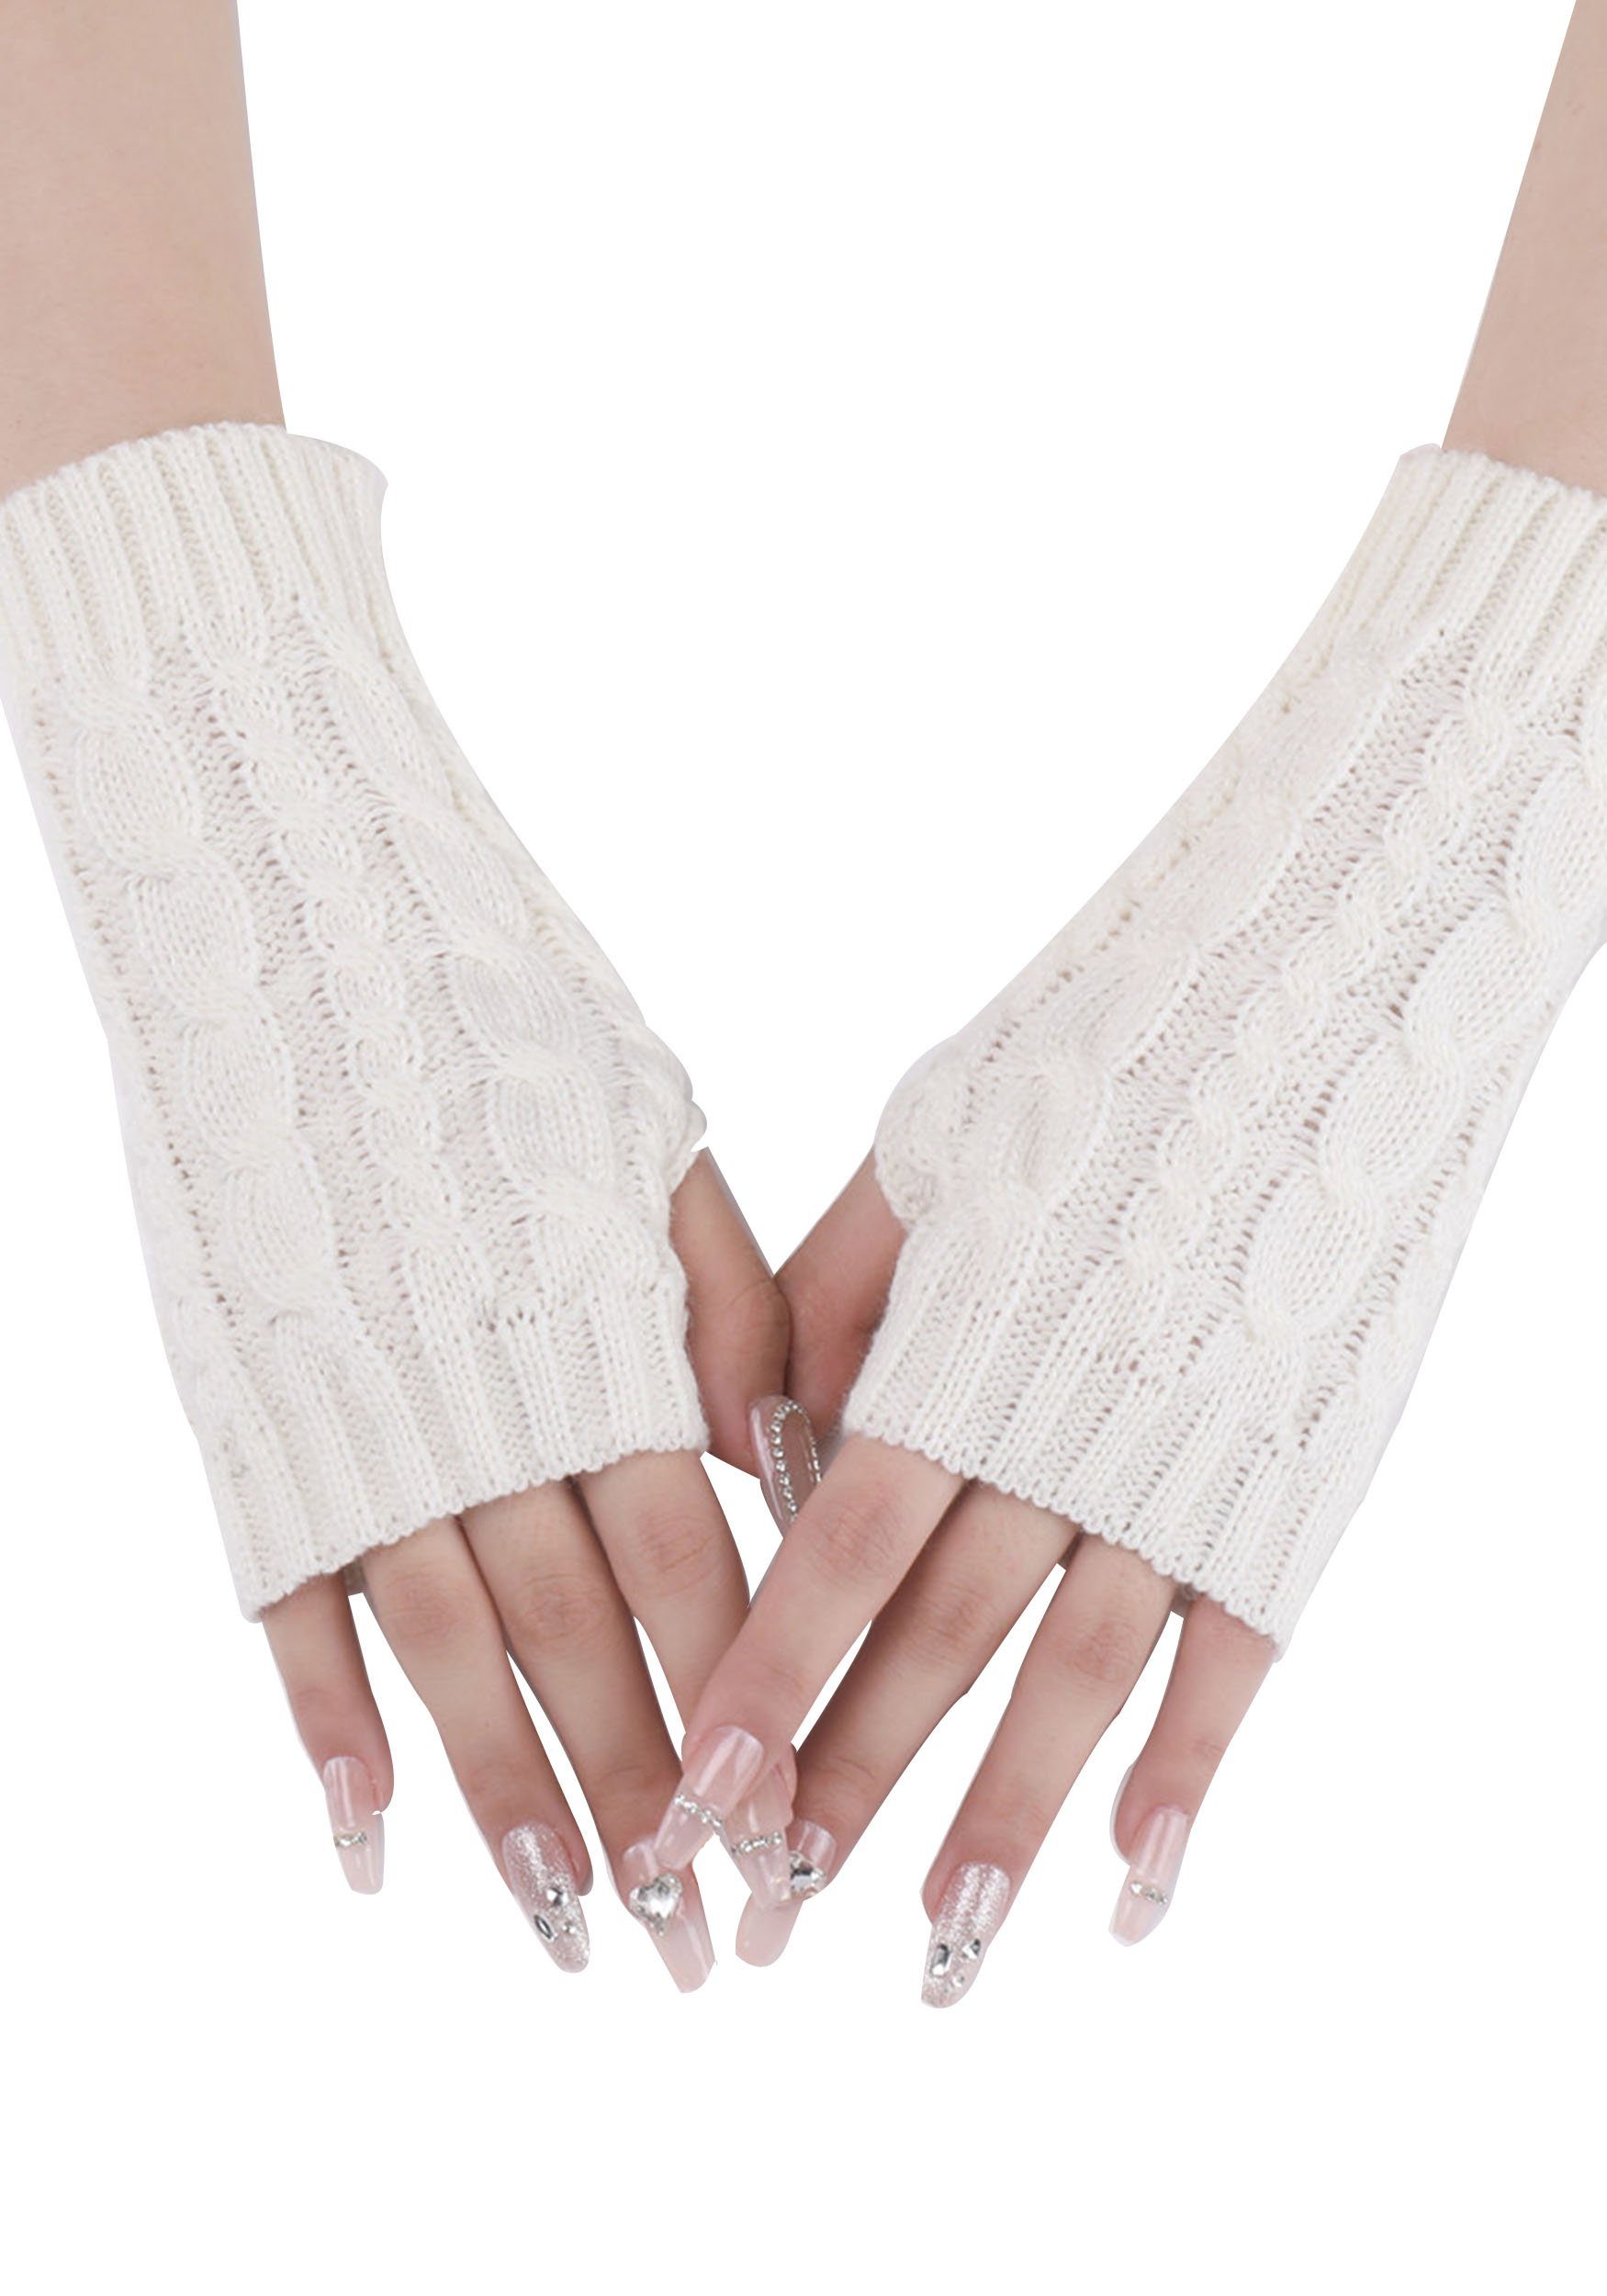 MAGICSHE Strickhandschuhe 2 Paar Gestrickte Jacquard Fingerlose Handschuhe Weiß